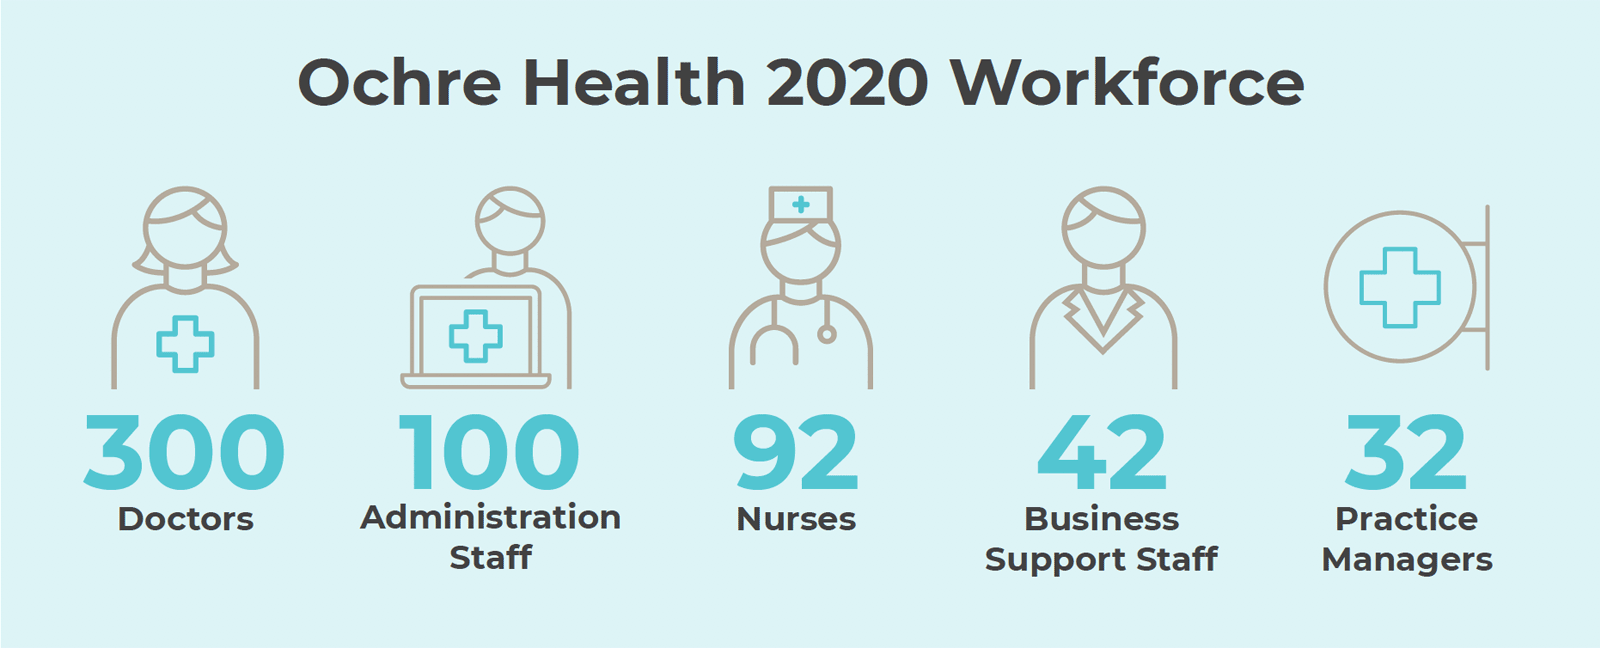 Ochre Health 2020 Workforce